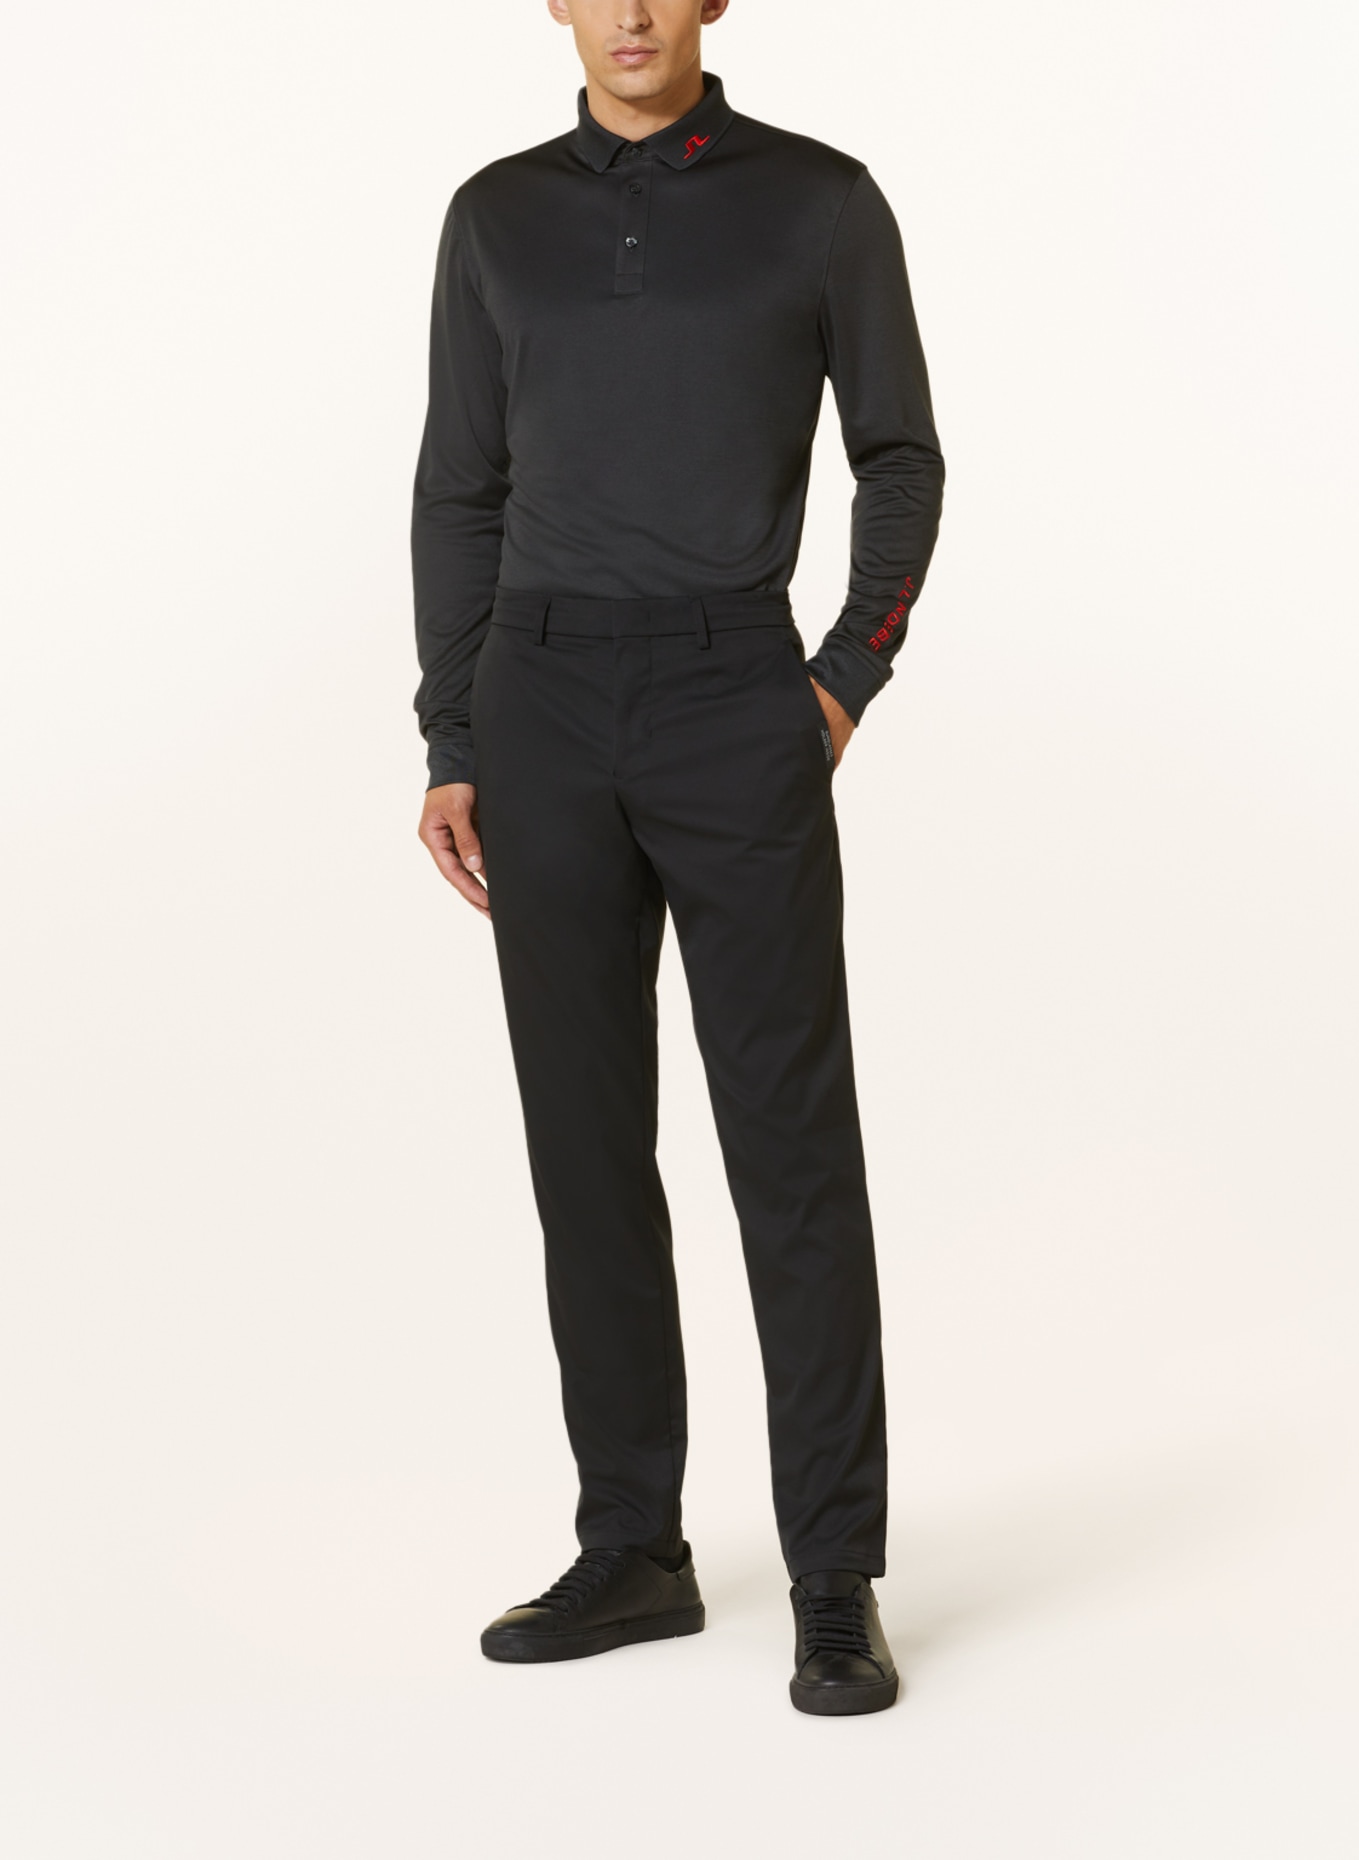 J.LINDEBERG Performance polo shirt, Color: BLACK (Image 2)